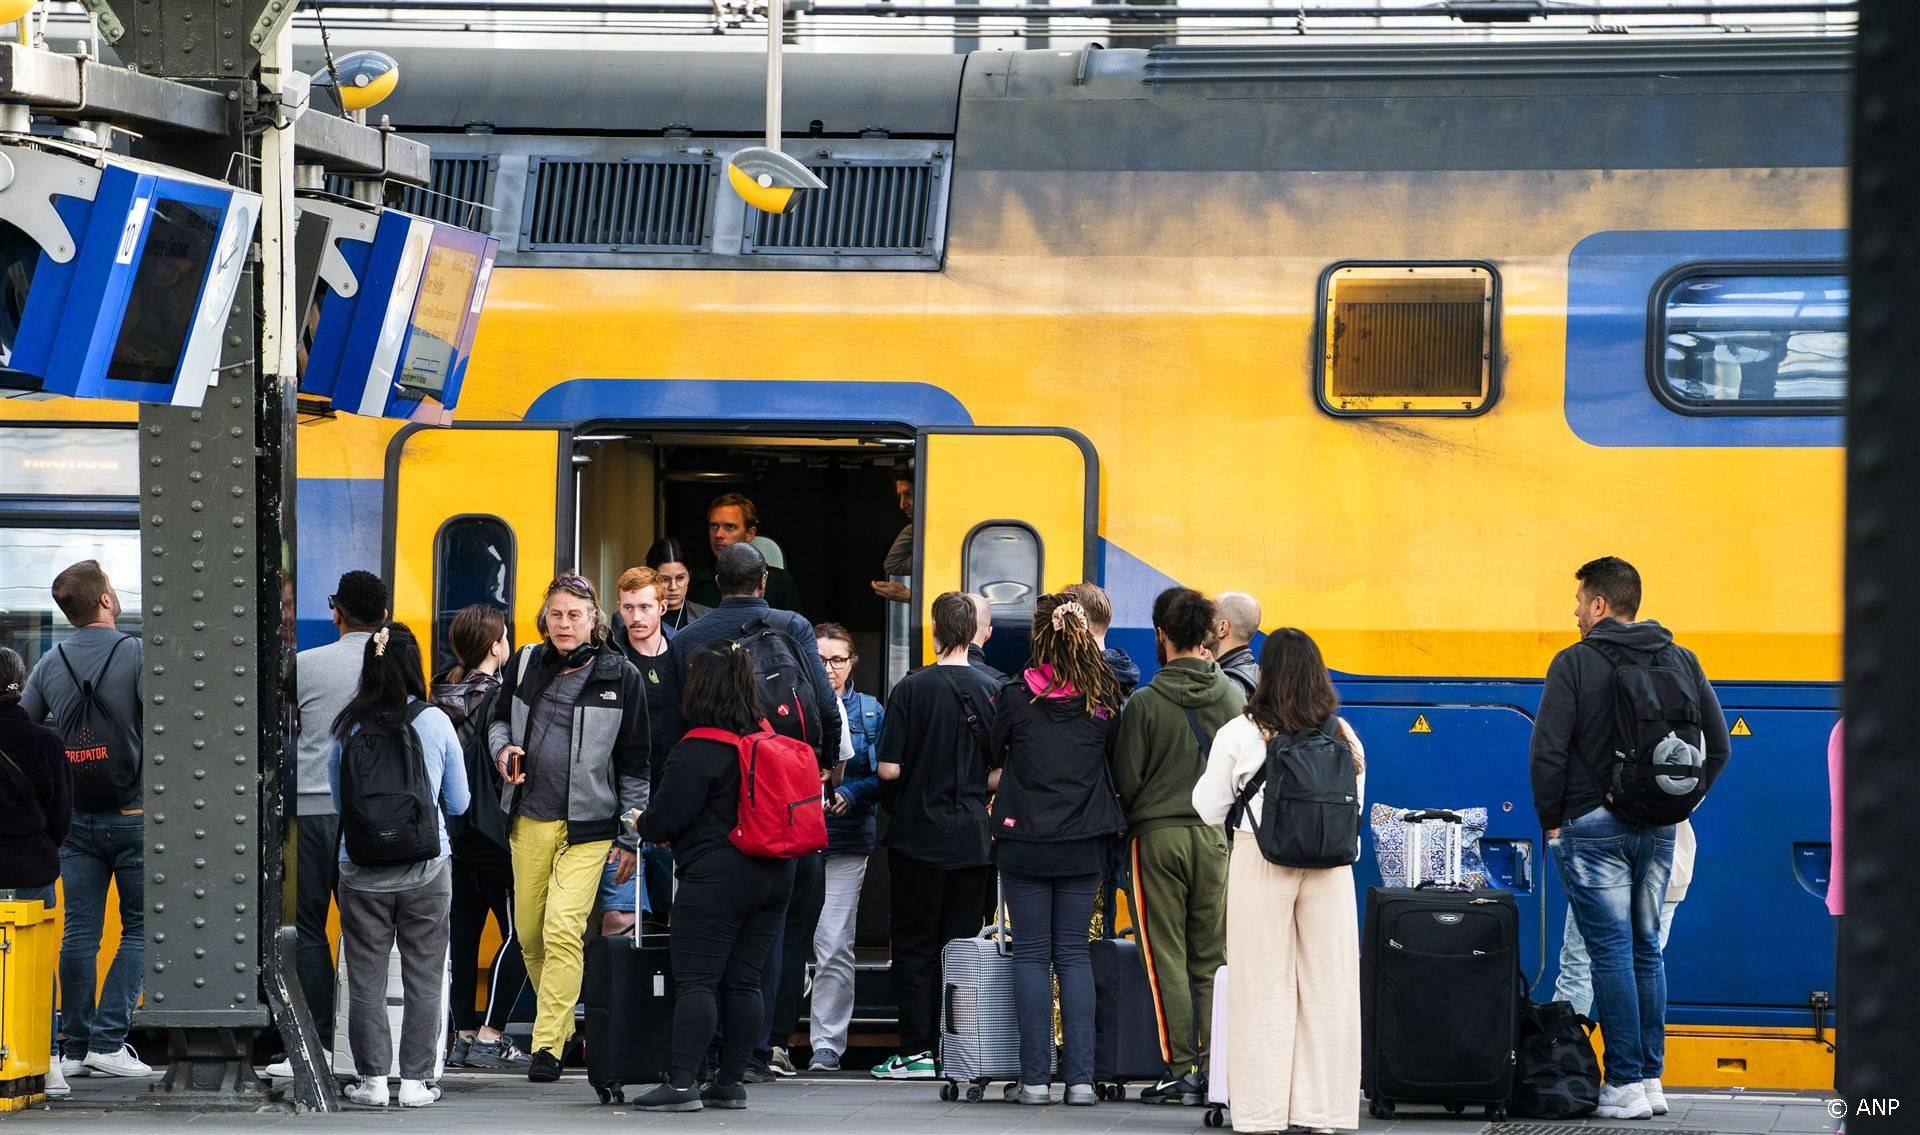 AMSTERDAM - Het treinverkeer komt langzaam op gang op station Amsterdam Centraal. Door een IT-storing was er lange tijd geen treinverkeer mogelijk. ANP JEROEN JUMELET